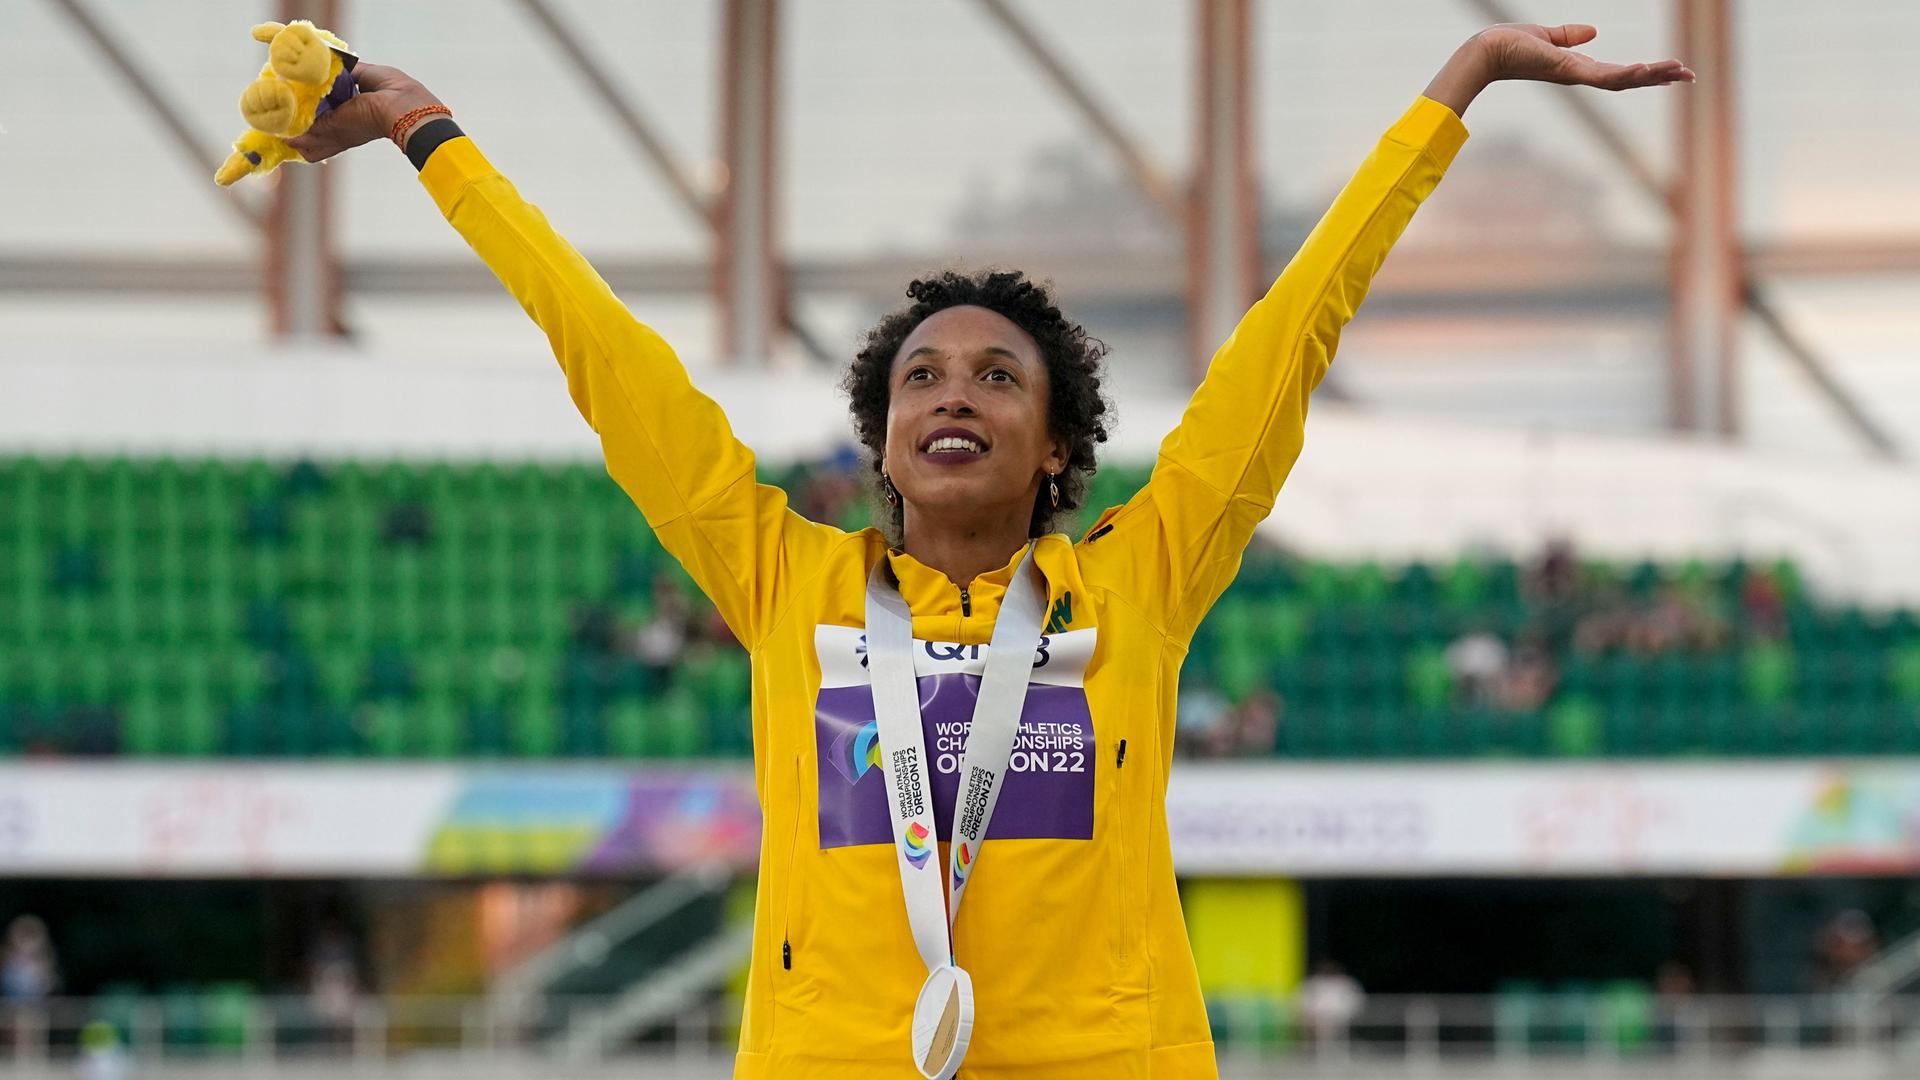 Die Weitspringerin Malaika Mihambo steht im Stadion in Oregon und reckt beide Arme in die Höhe. Um den Hals trägt sie ihre Goldmedaille.